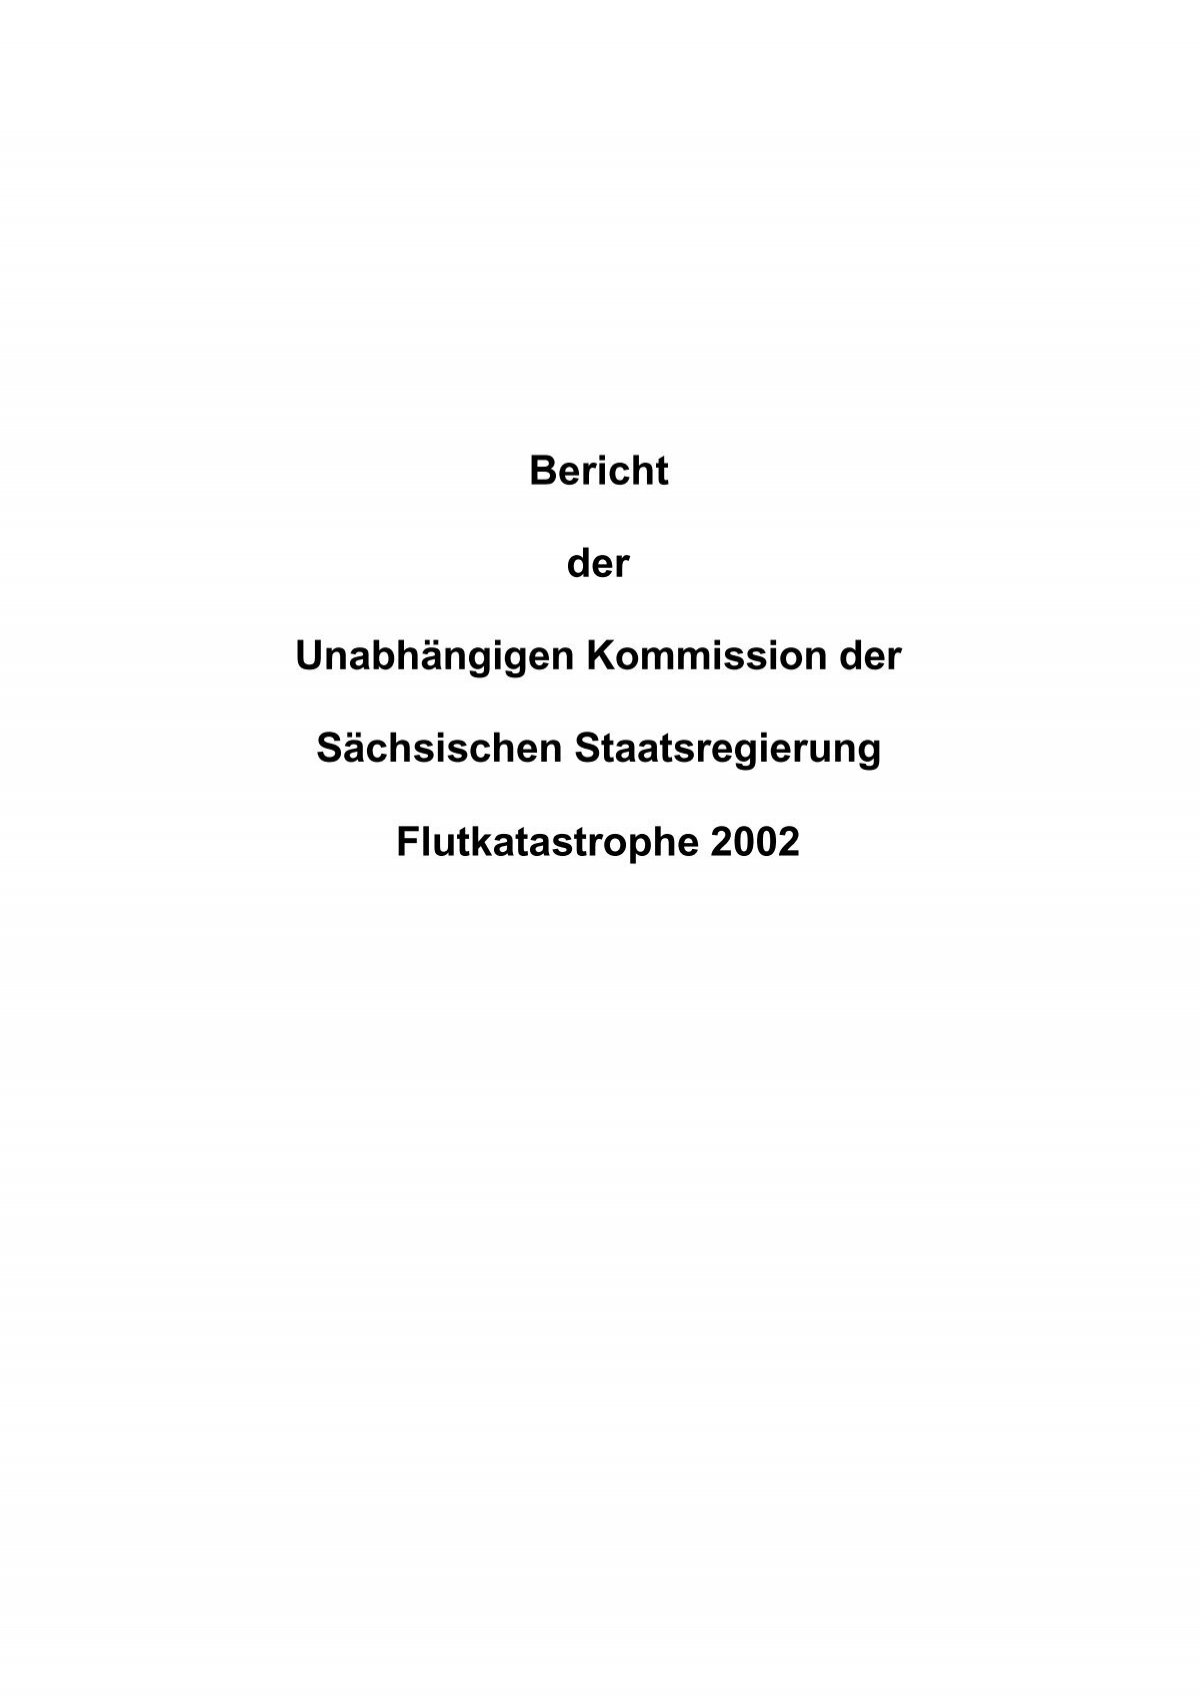 Bericht der Unabhängigen Kommission der Sächsischen